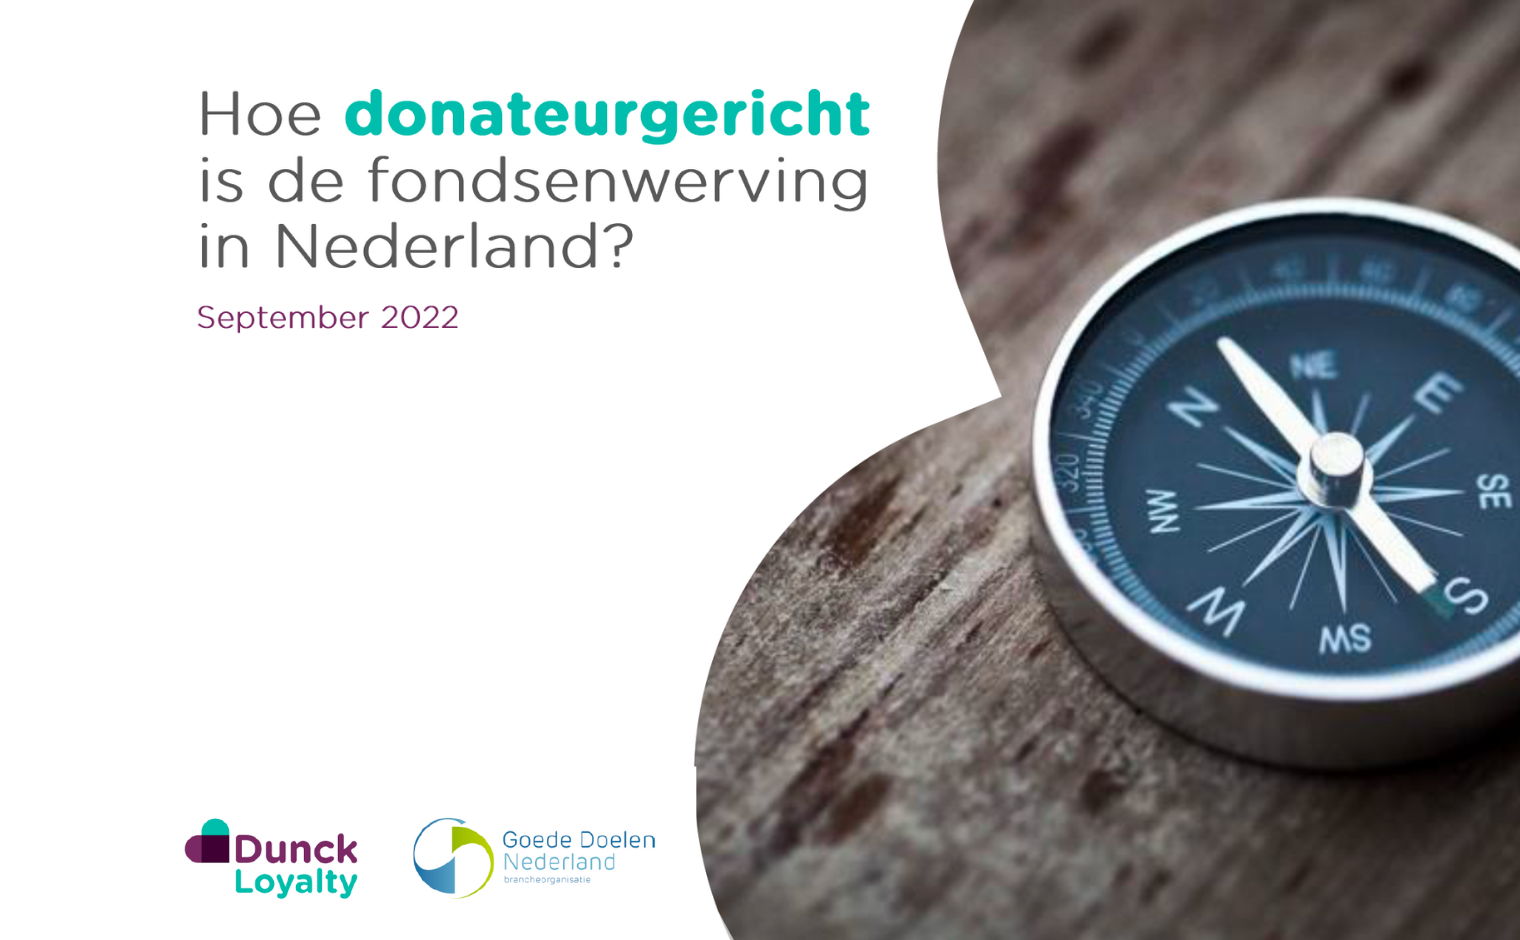 protest Verplicht kijken Hoe donateurgericht zijn Nederlandse goede doelen? - Vakblad fondsenwerving